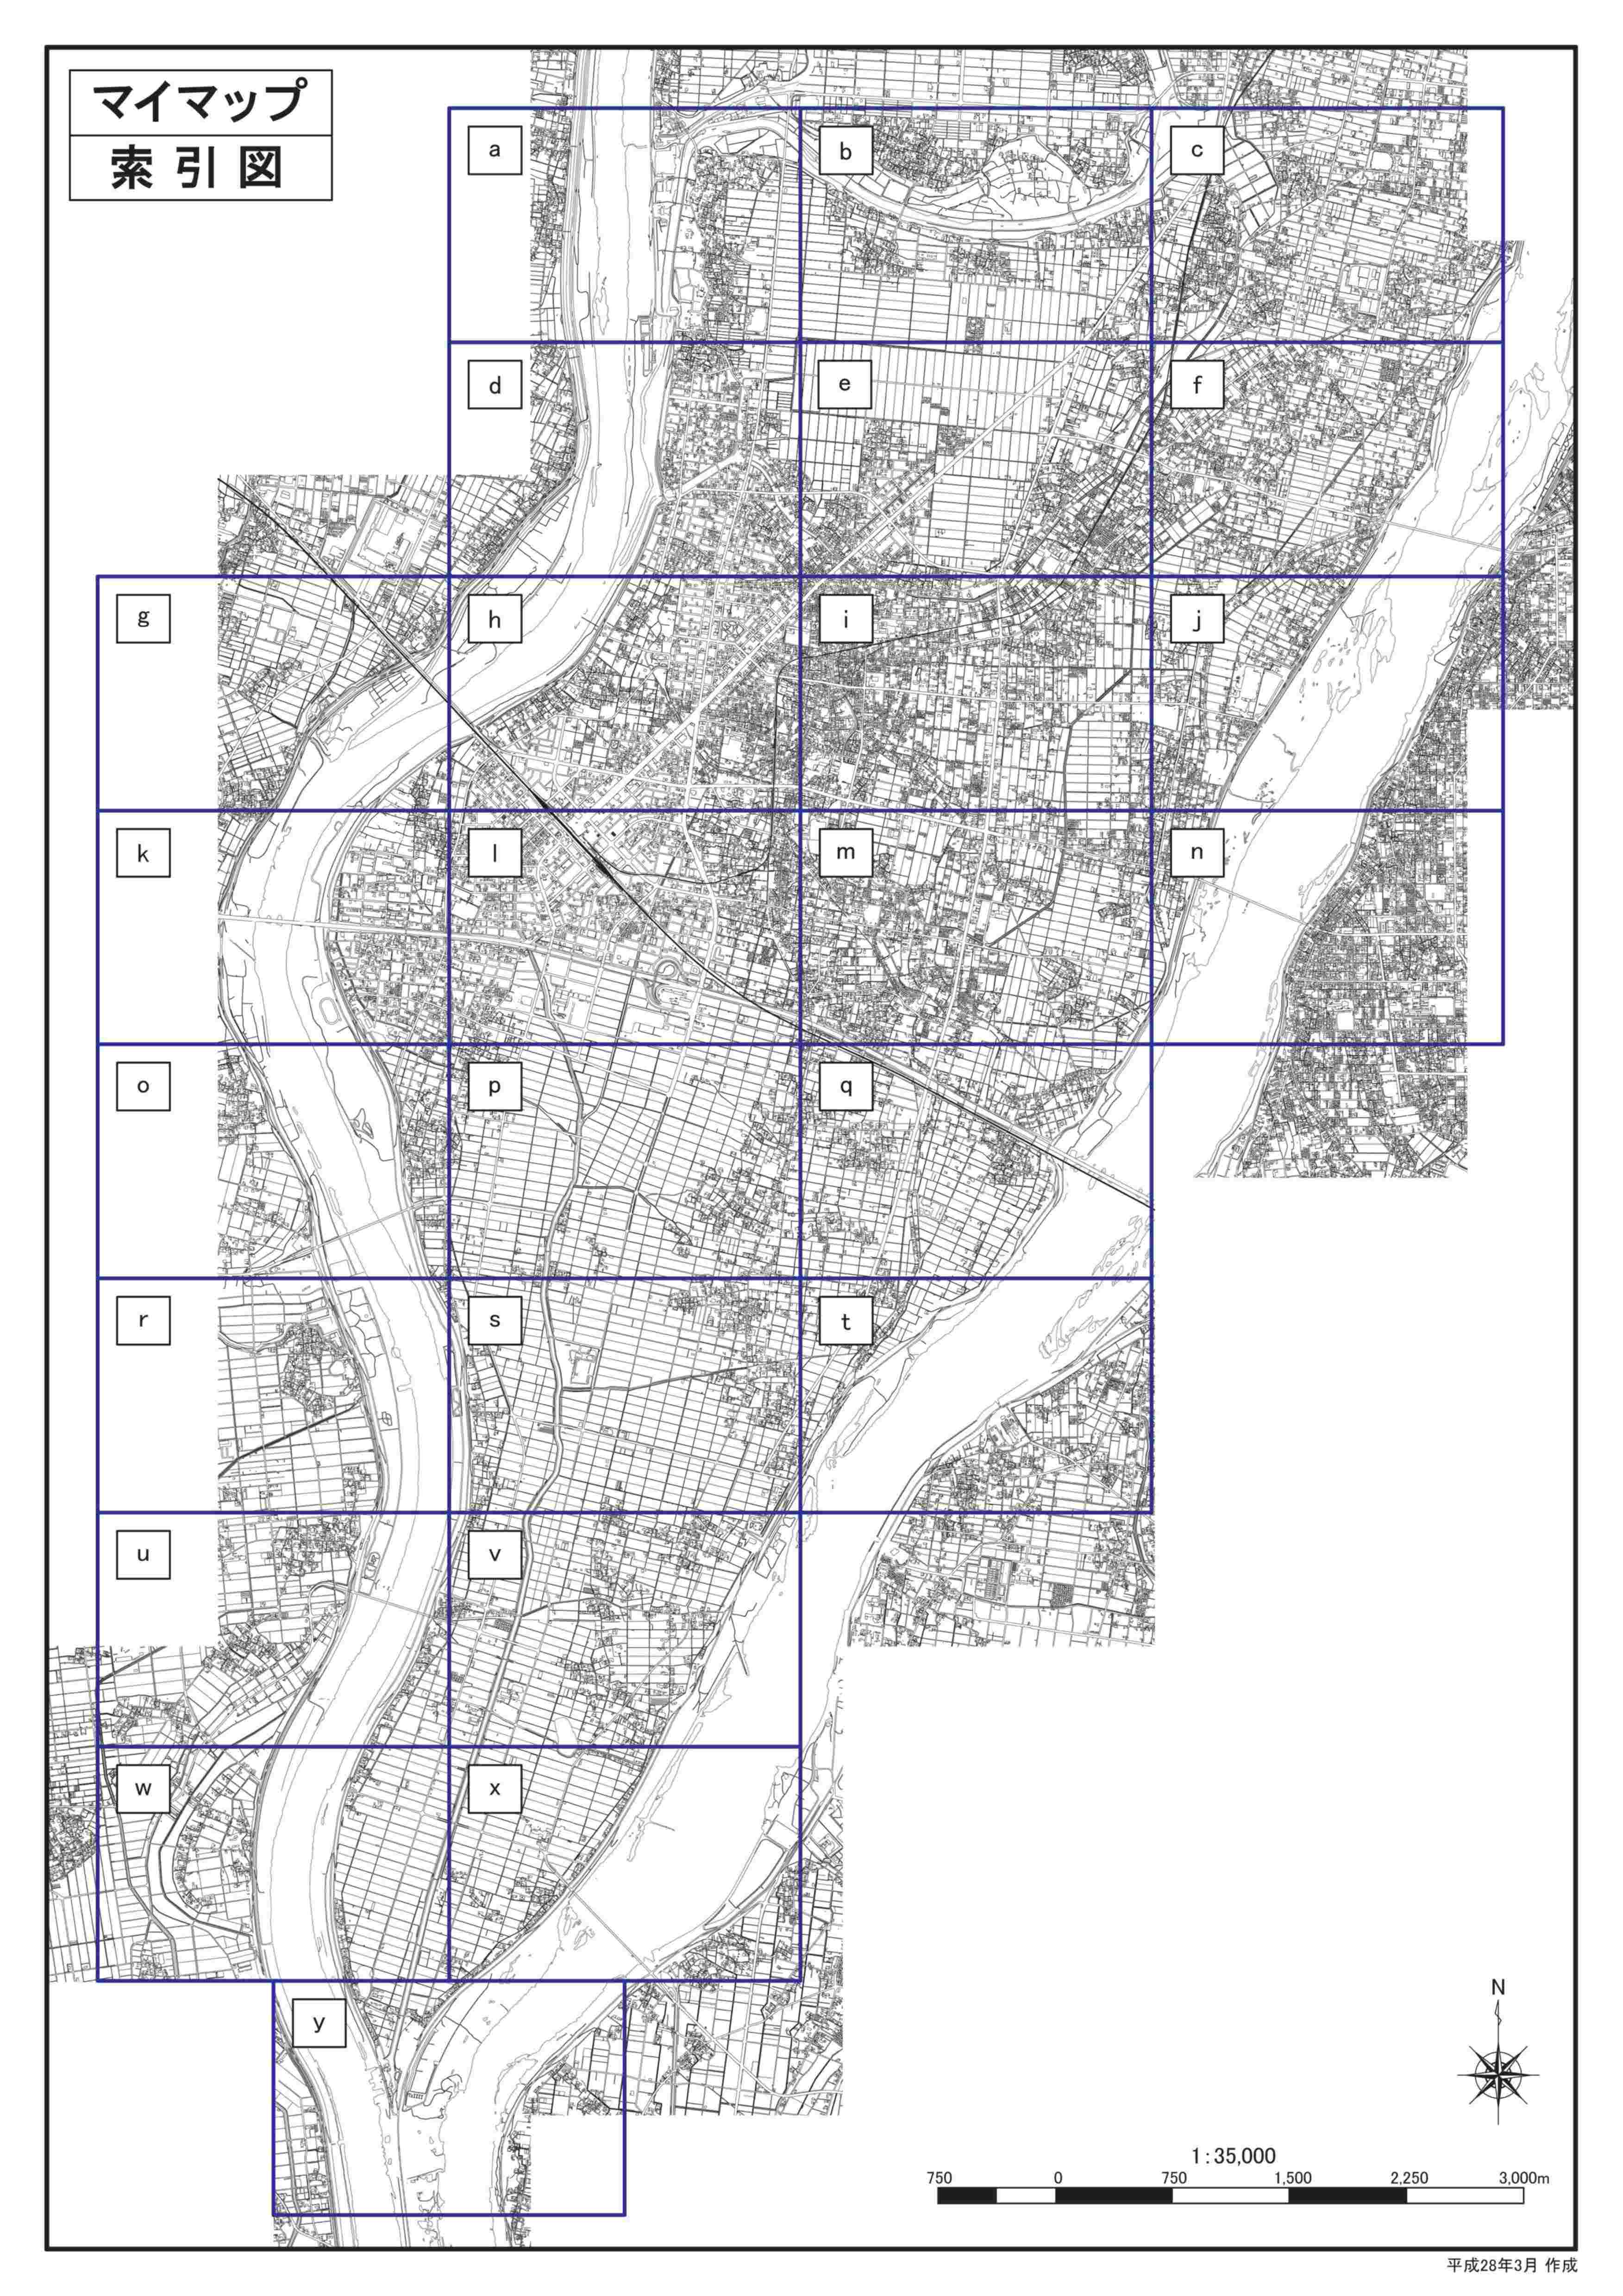 桑原川洪水ハザードマップ想定最大規模版（詳細図）の画像